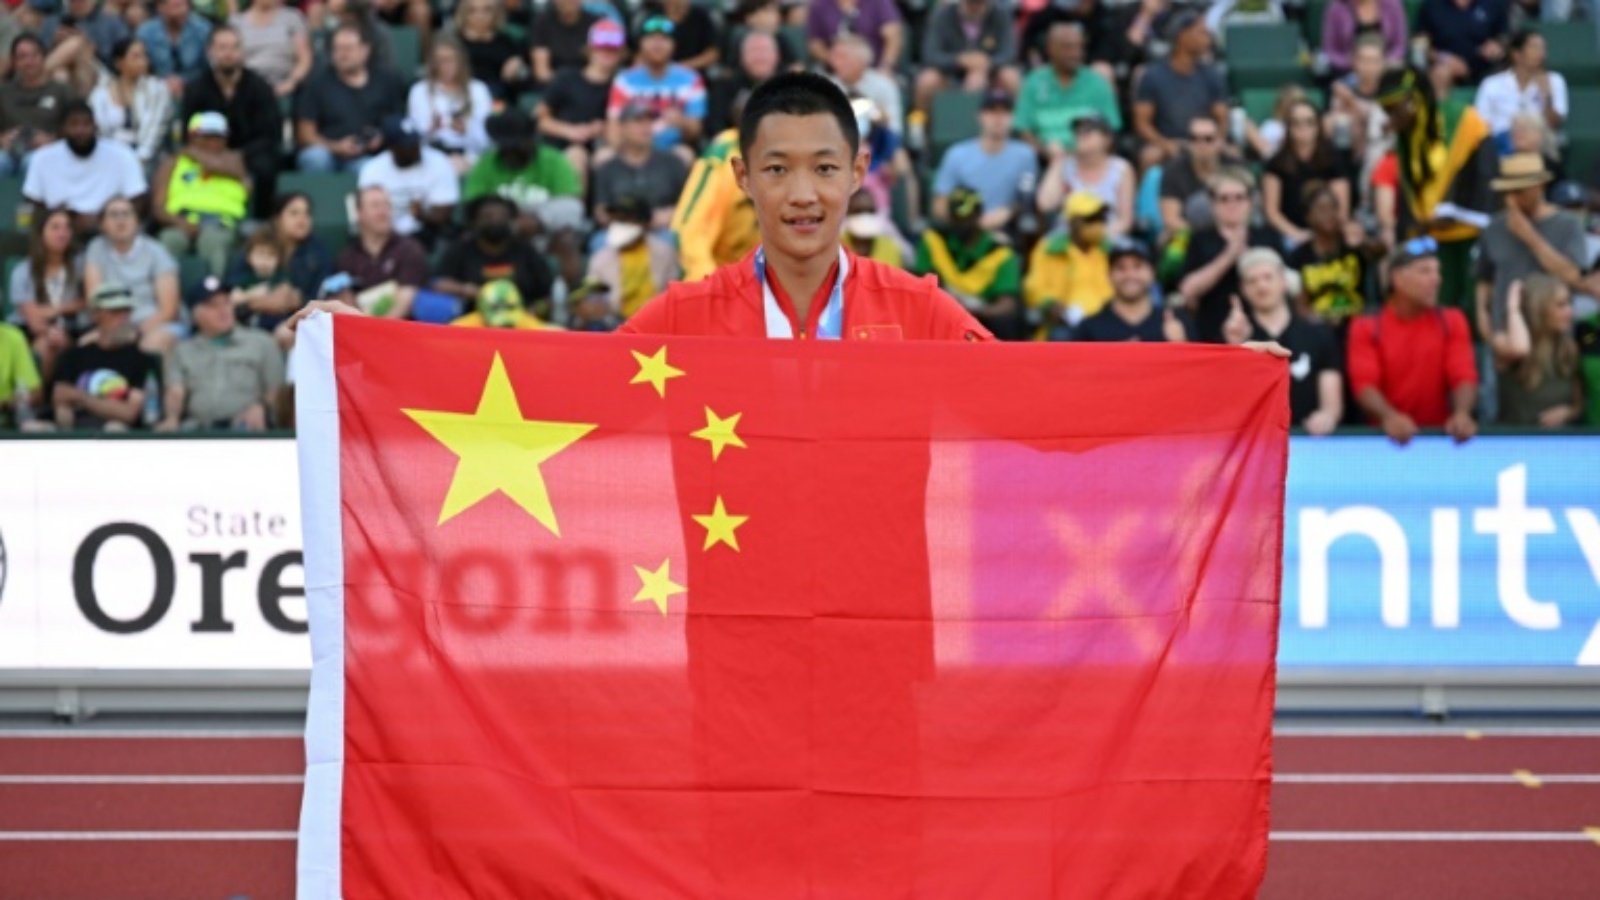 الصيني وانغ جيانان يحتفل بتتويجه بذهبية مسابقة الوثب الطويل في مونديال يوجين لألعاب القوى في 16 يوليو 2022.